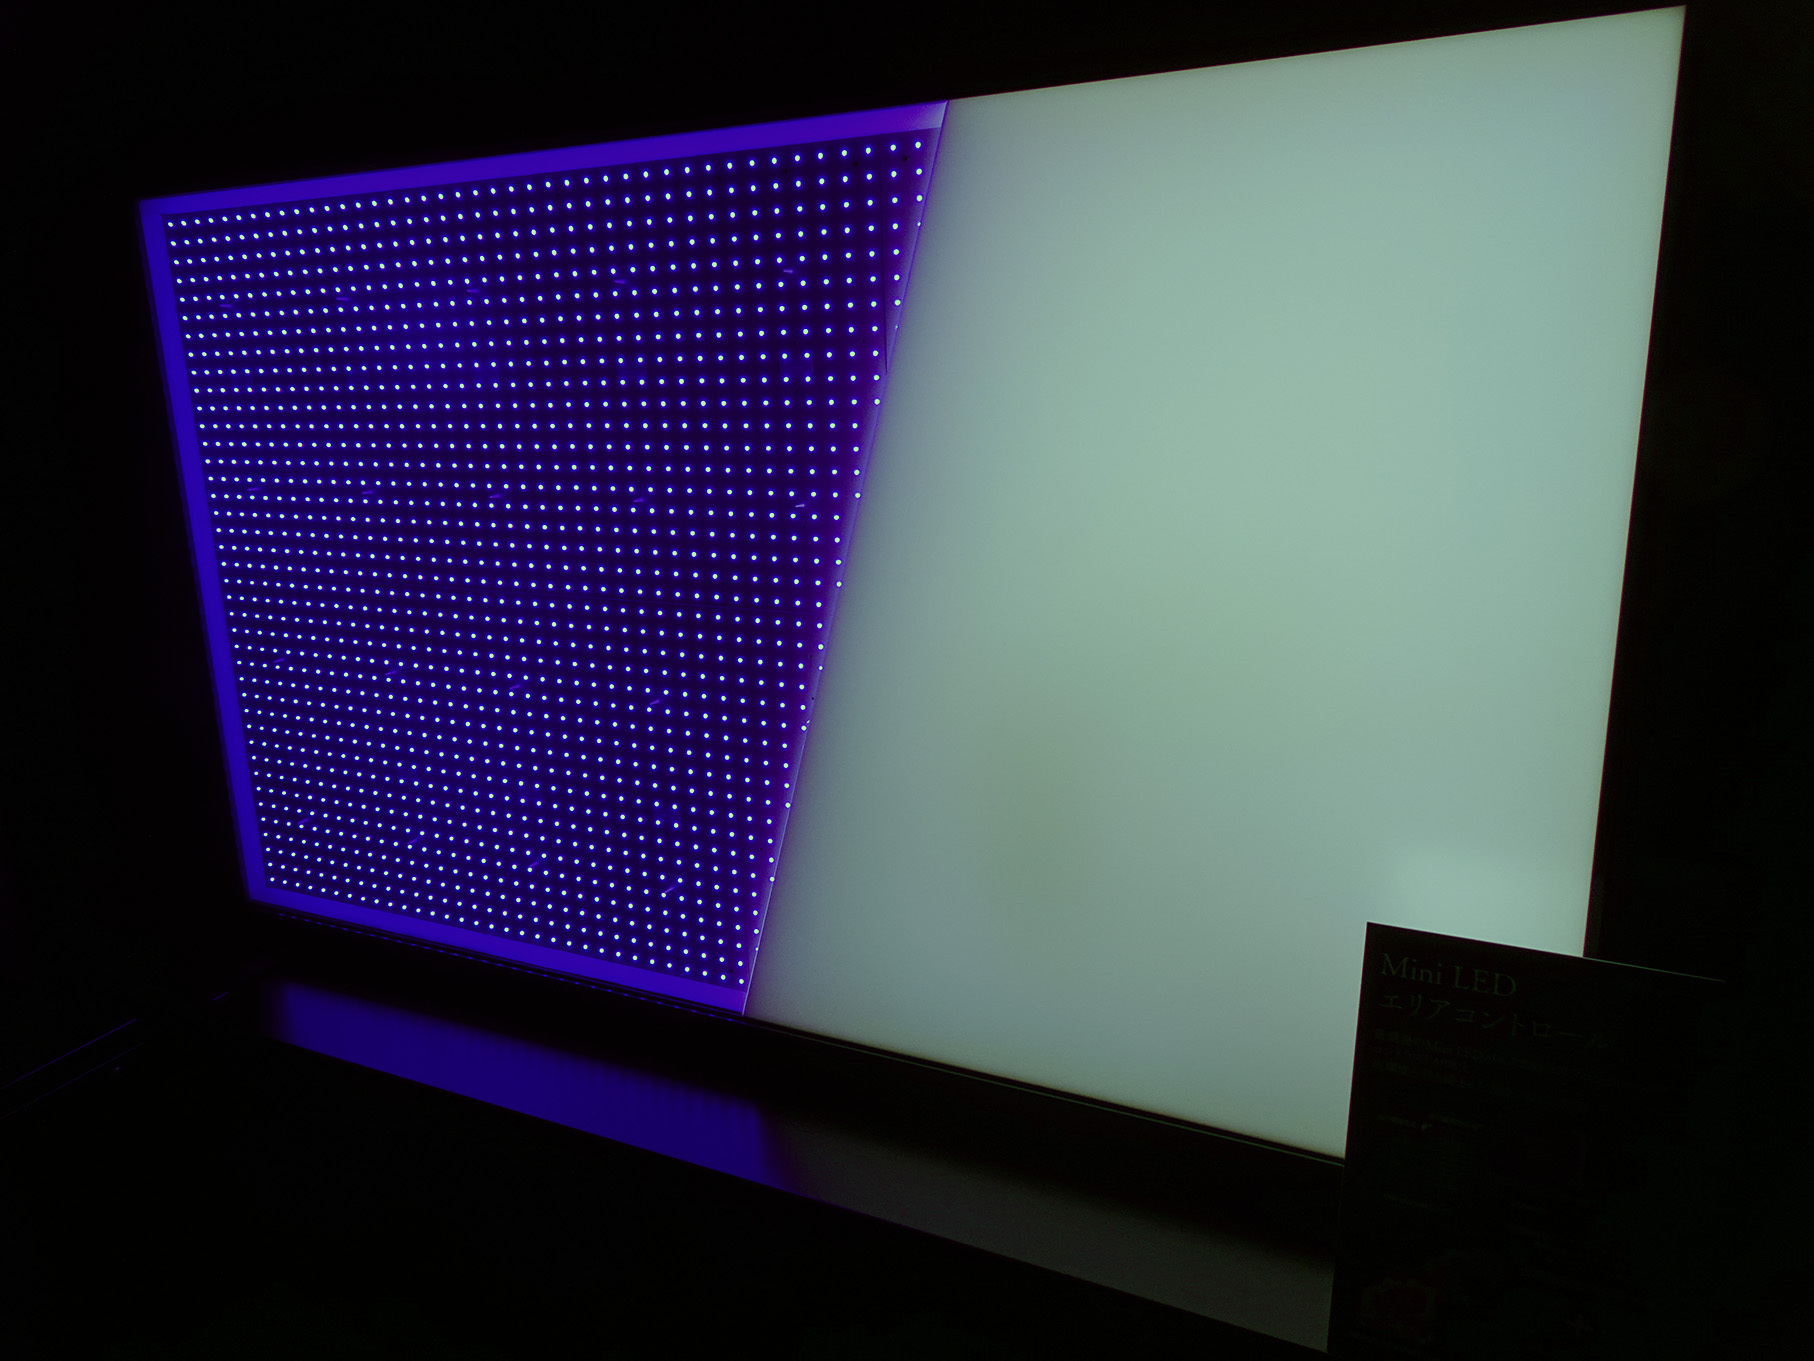  LED 広色域量子ドット液晶パネルのカットモデル